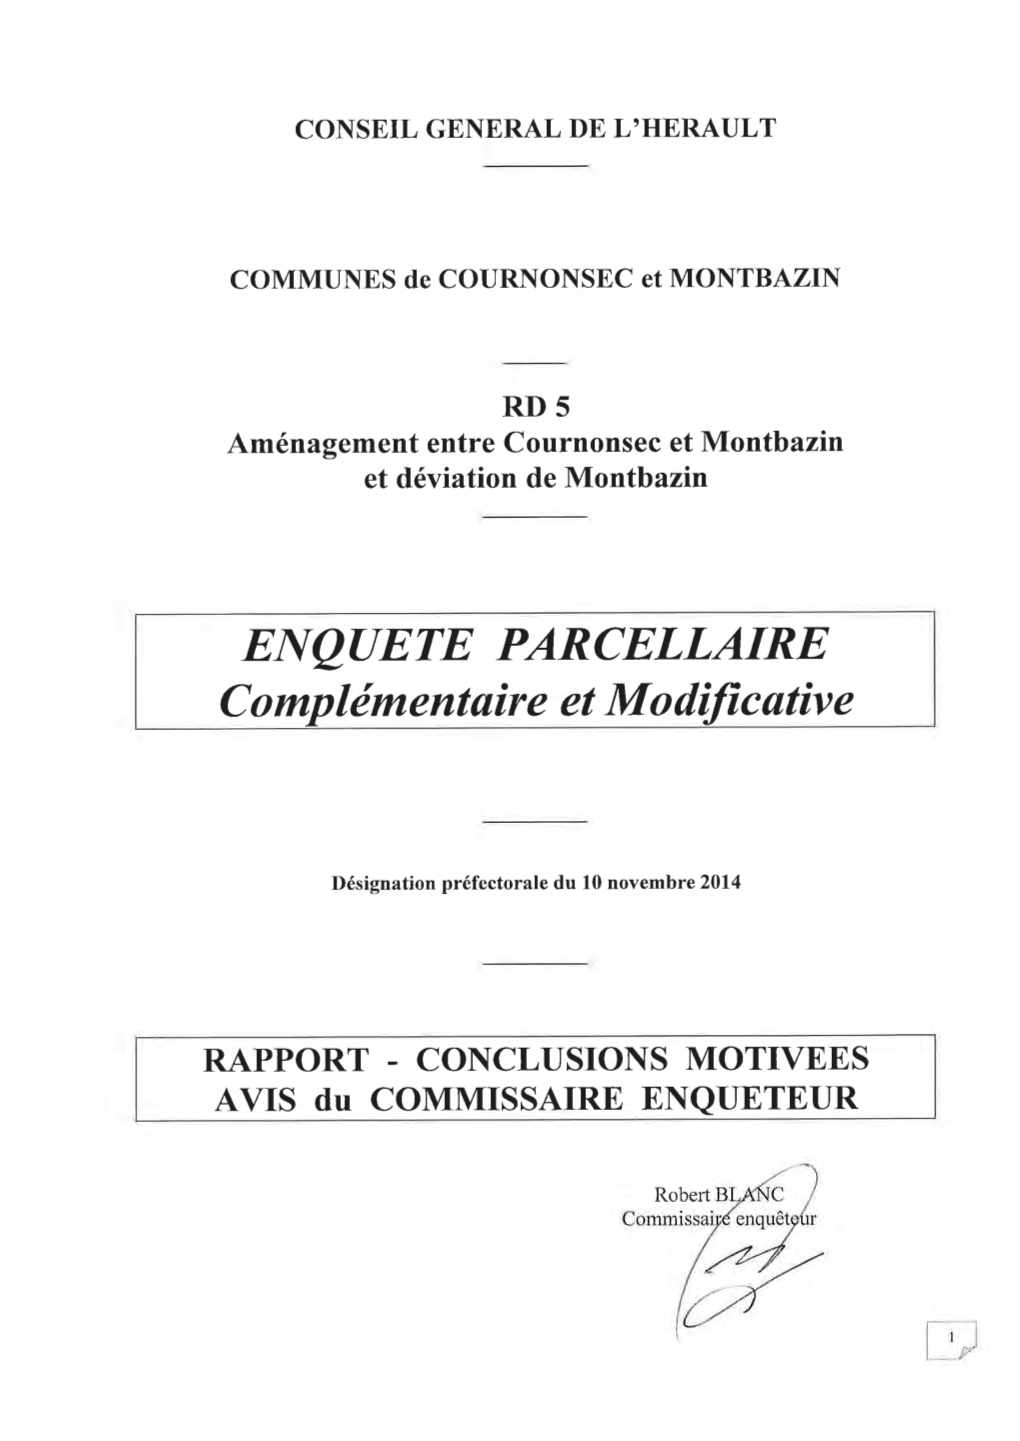 2-Rapport Enquête RD 5 Cournonsec-Montbazin.Pdf